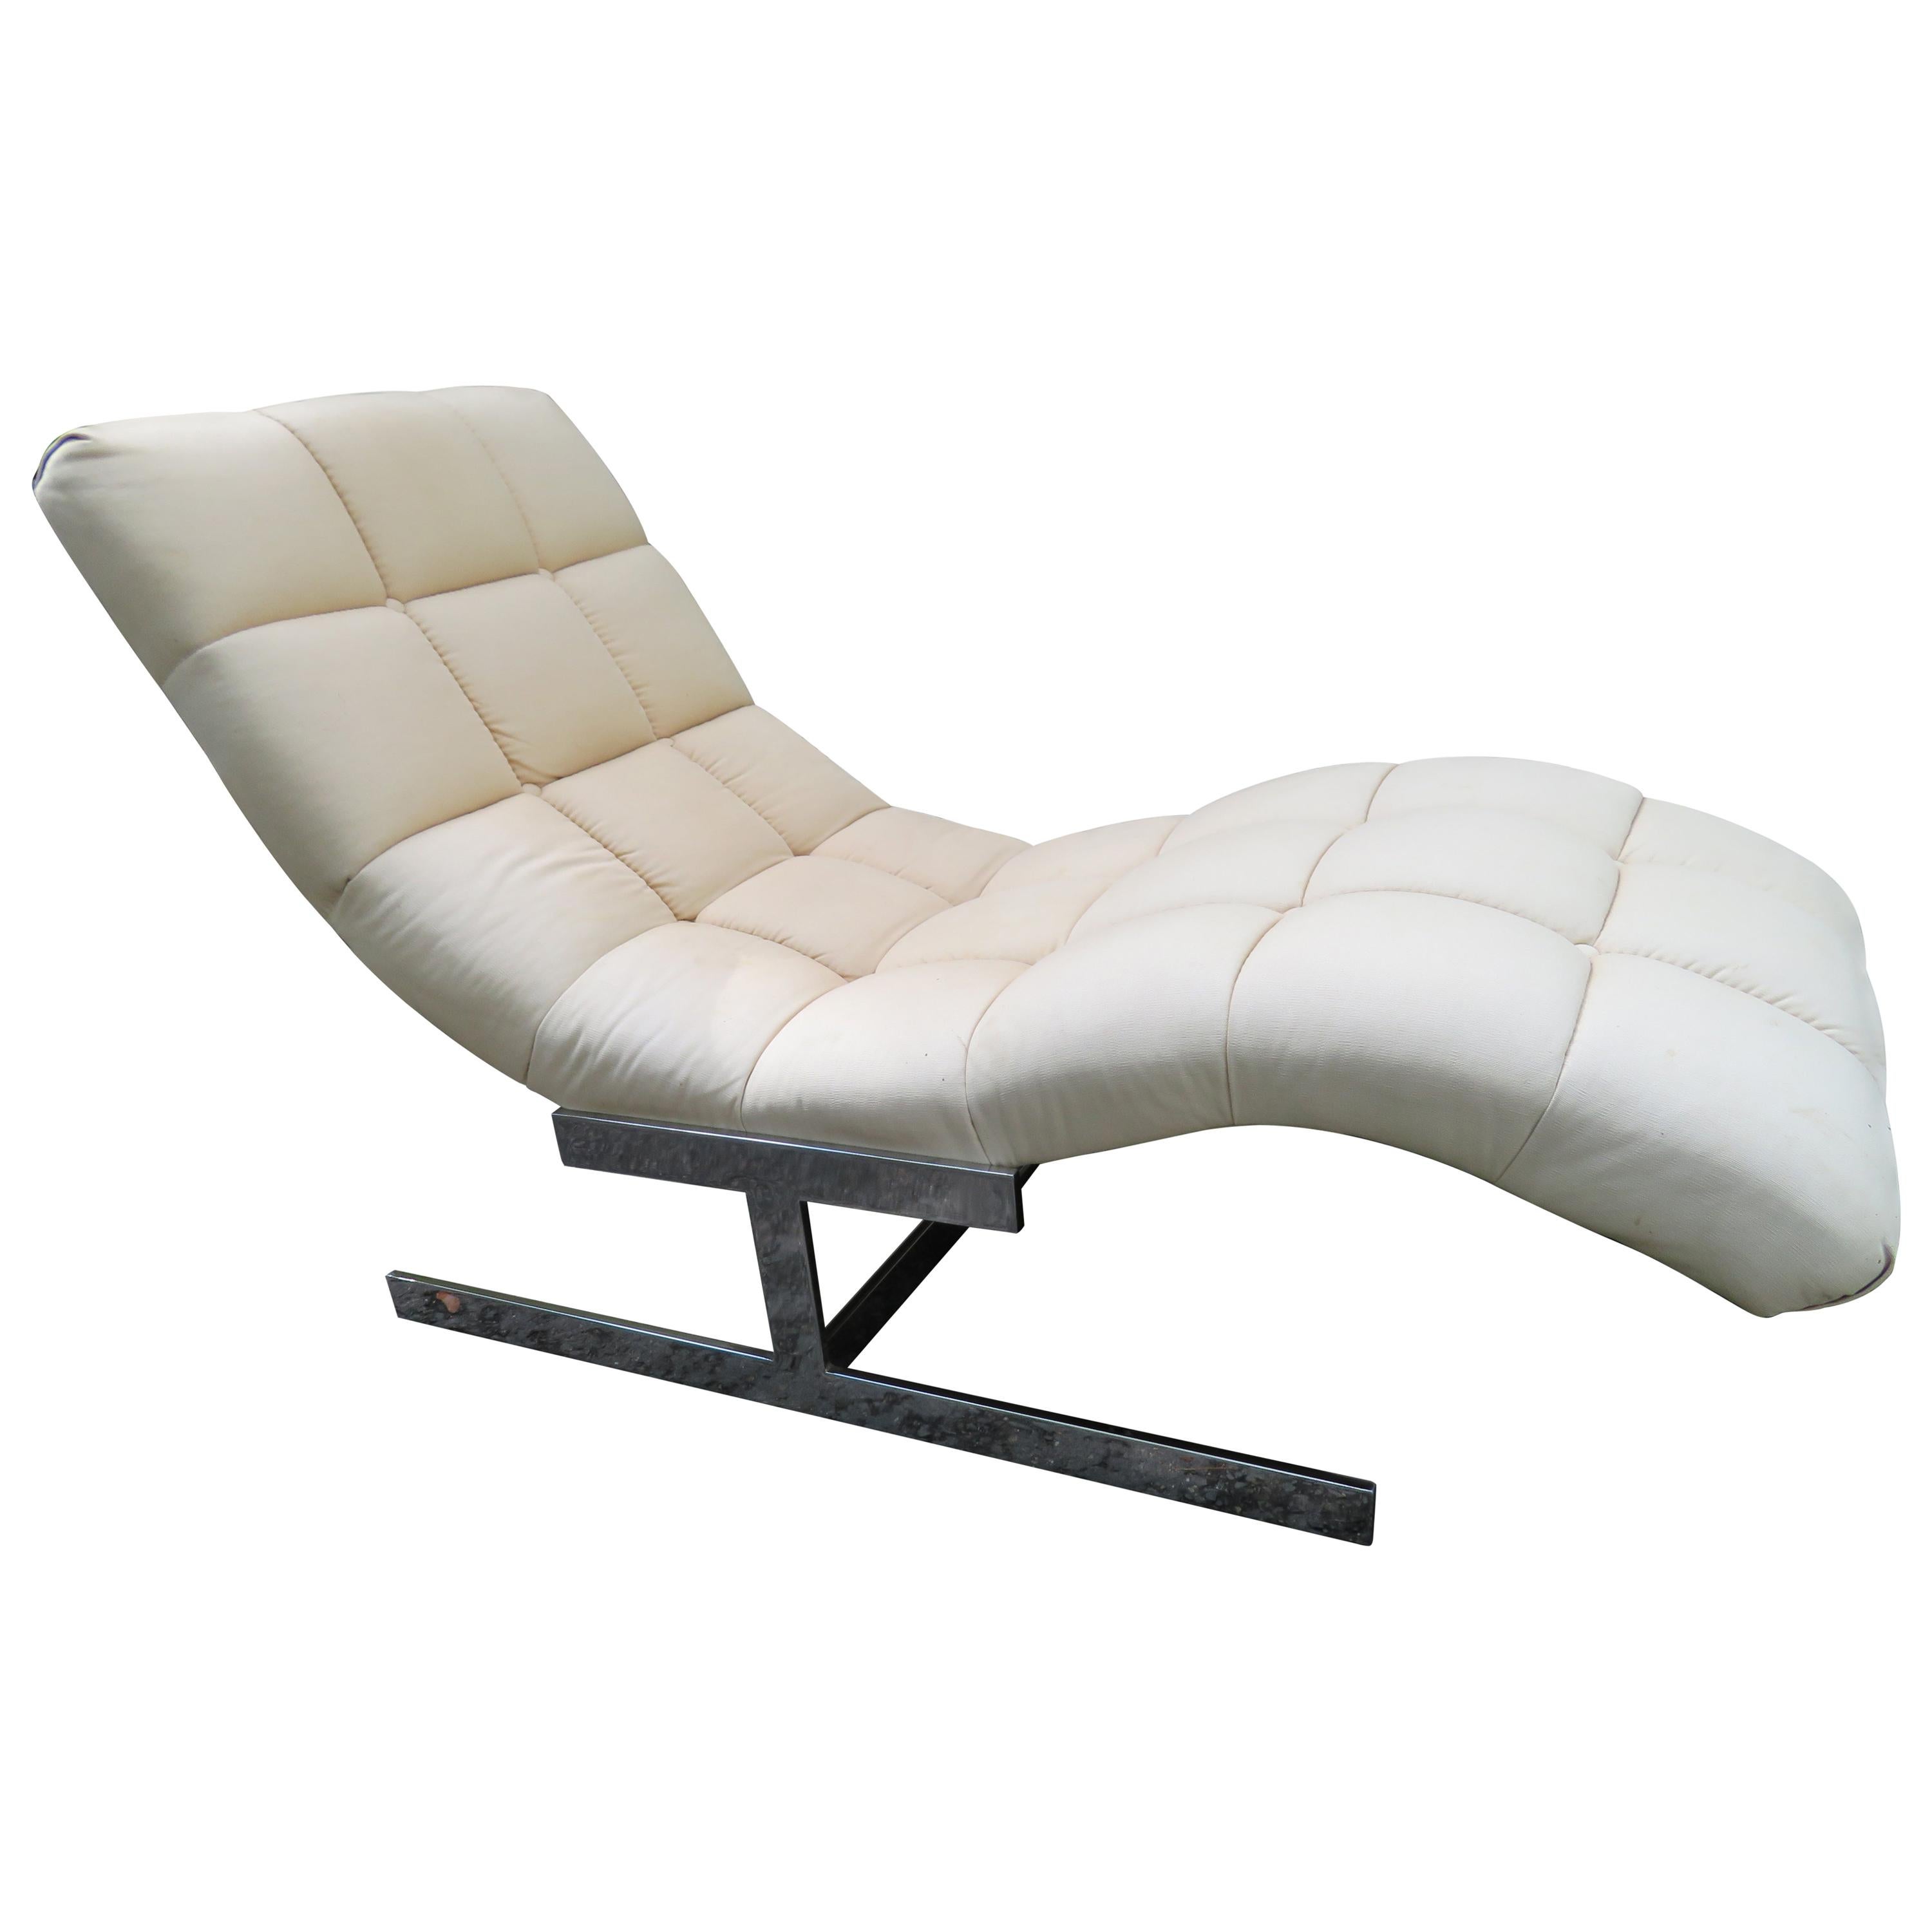 Sumptuous Milo Baughman "Wave" Chaise Lounge Chair Midcentury